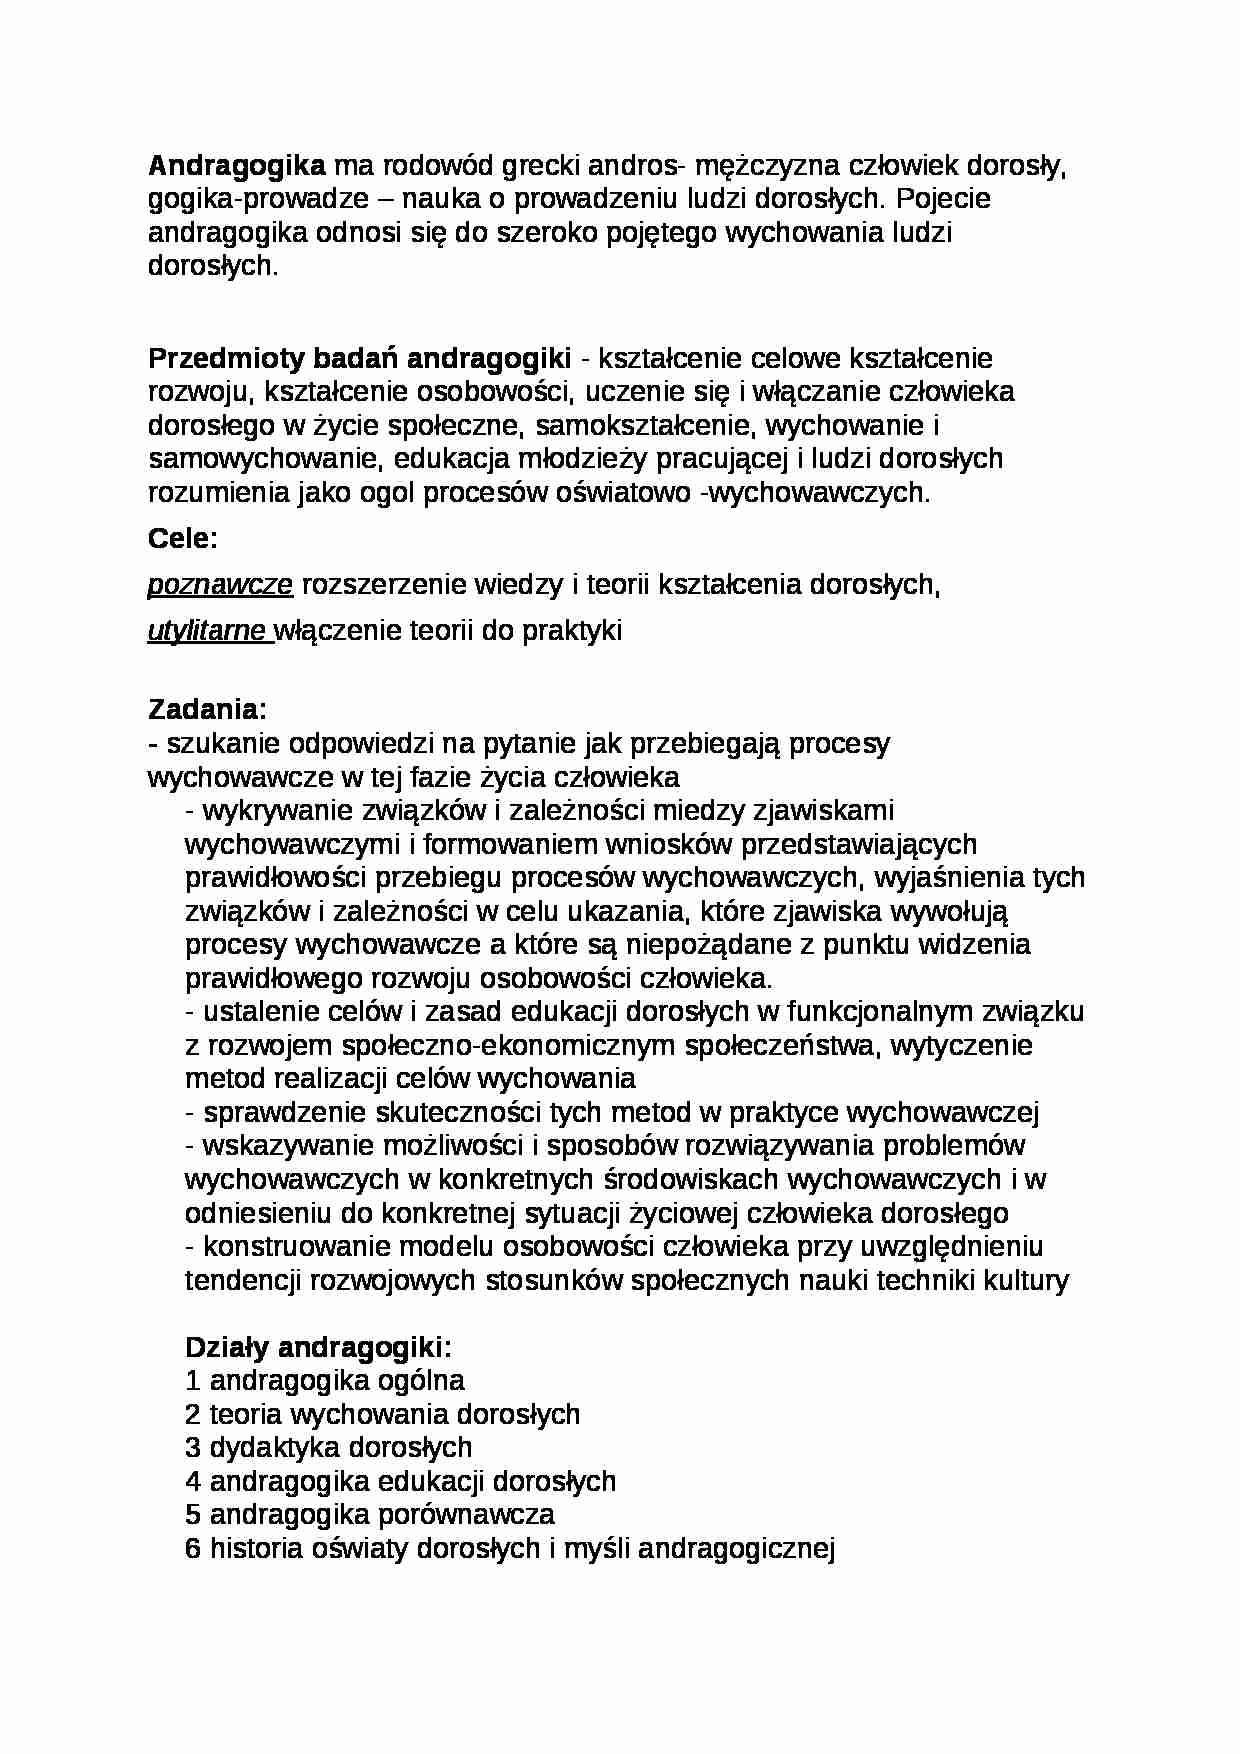 Przedmioty badań andragogiki- pedagogika - strona 1